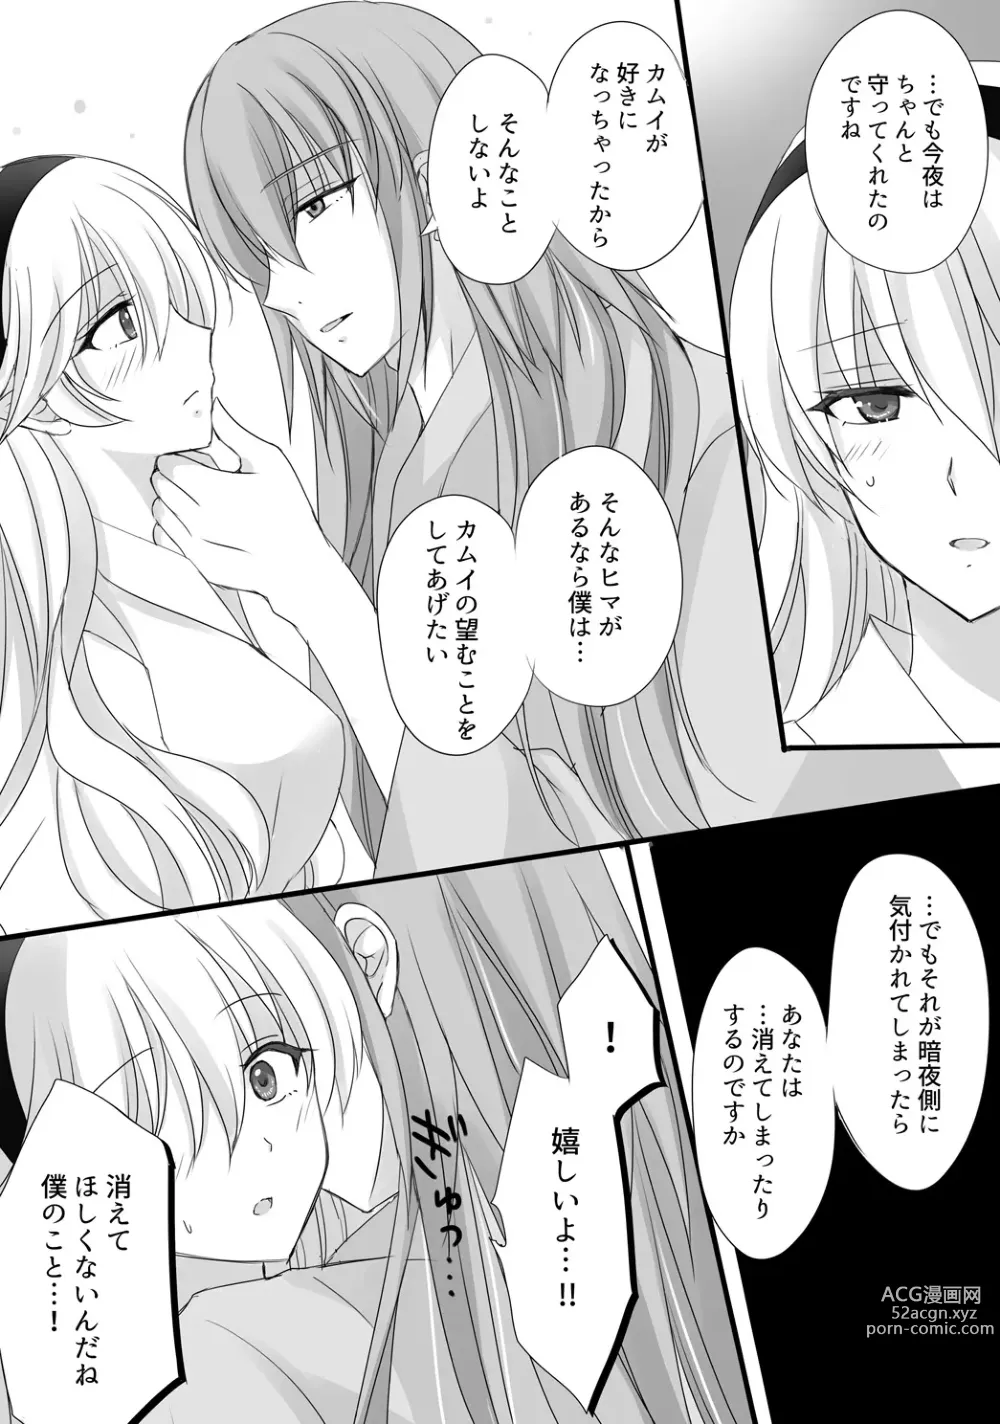 Page 9 of doujinshi FEif takukamu manga sanpuru `tengoku yori yaban zenpen[R 18]Fire Emblem: Three Houses)